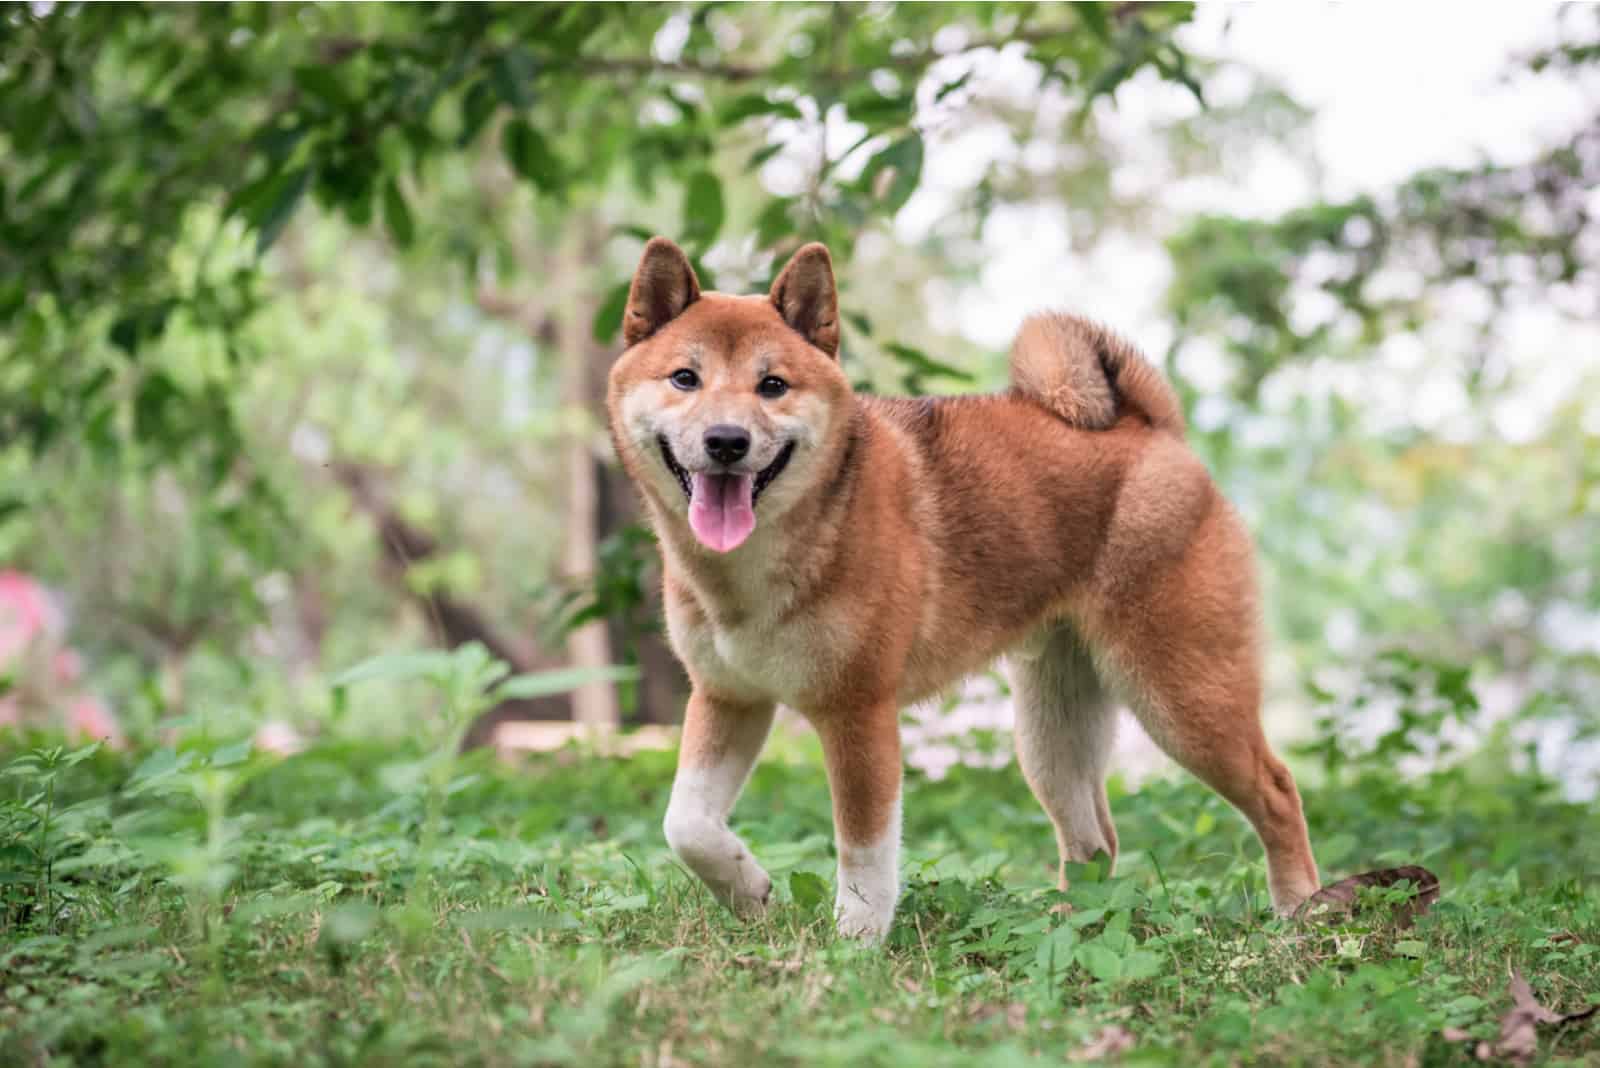 The Shiba Inu Lifespan: How Long Do Shiba Inu Dogs Live?